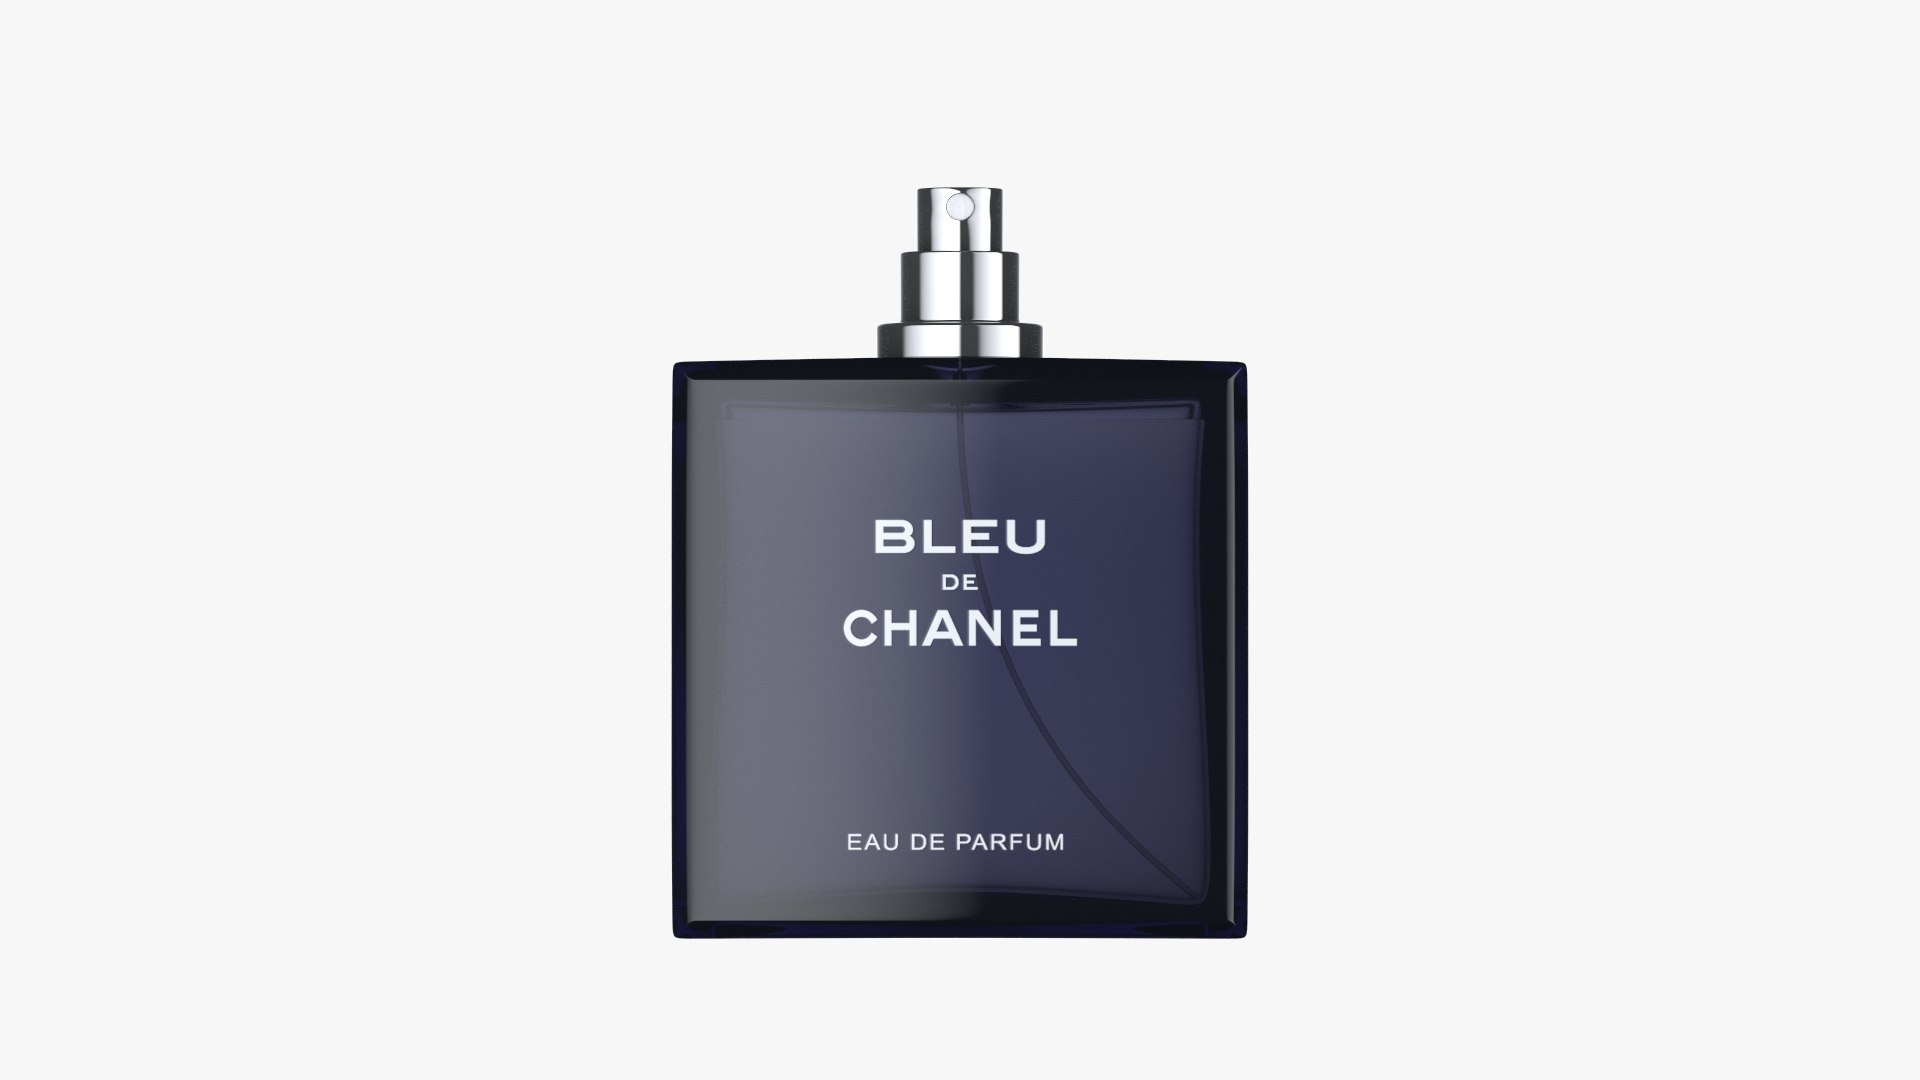 Bleu de Chanel Perfume 3D model - TurboSquid 1886818